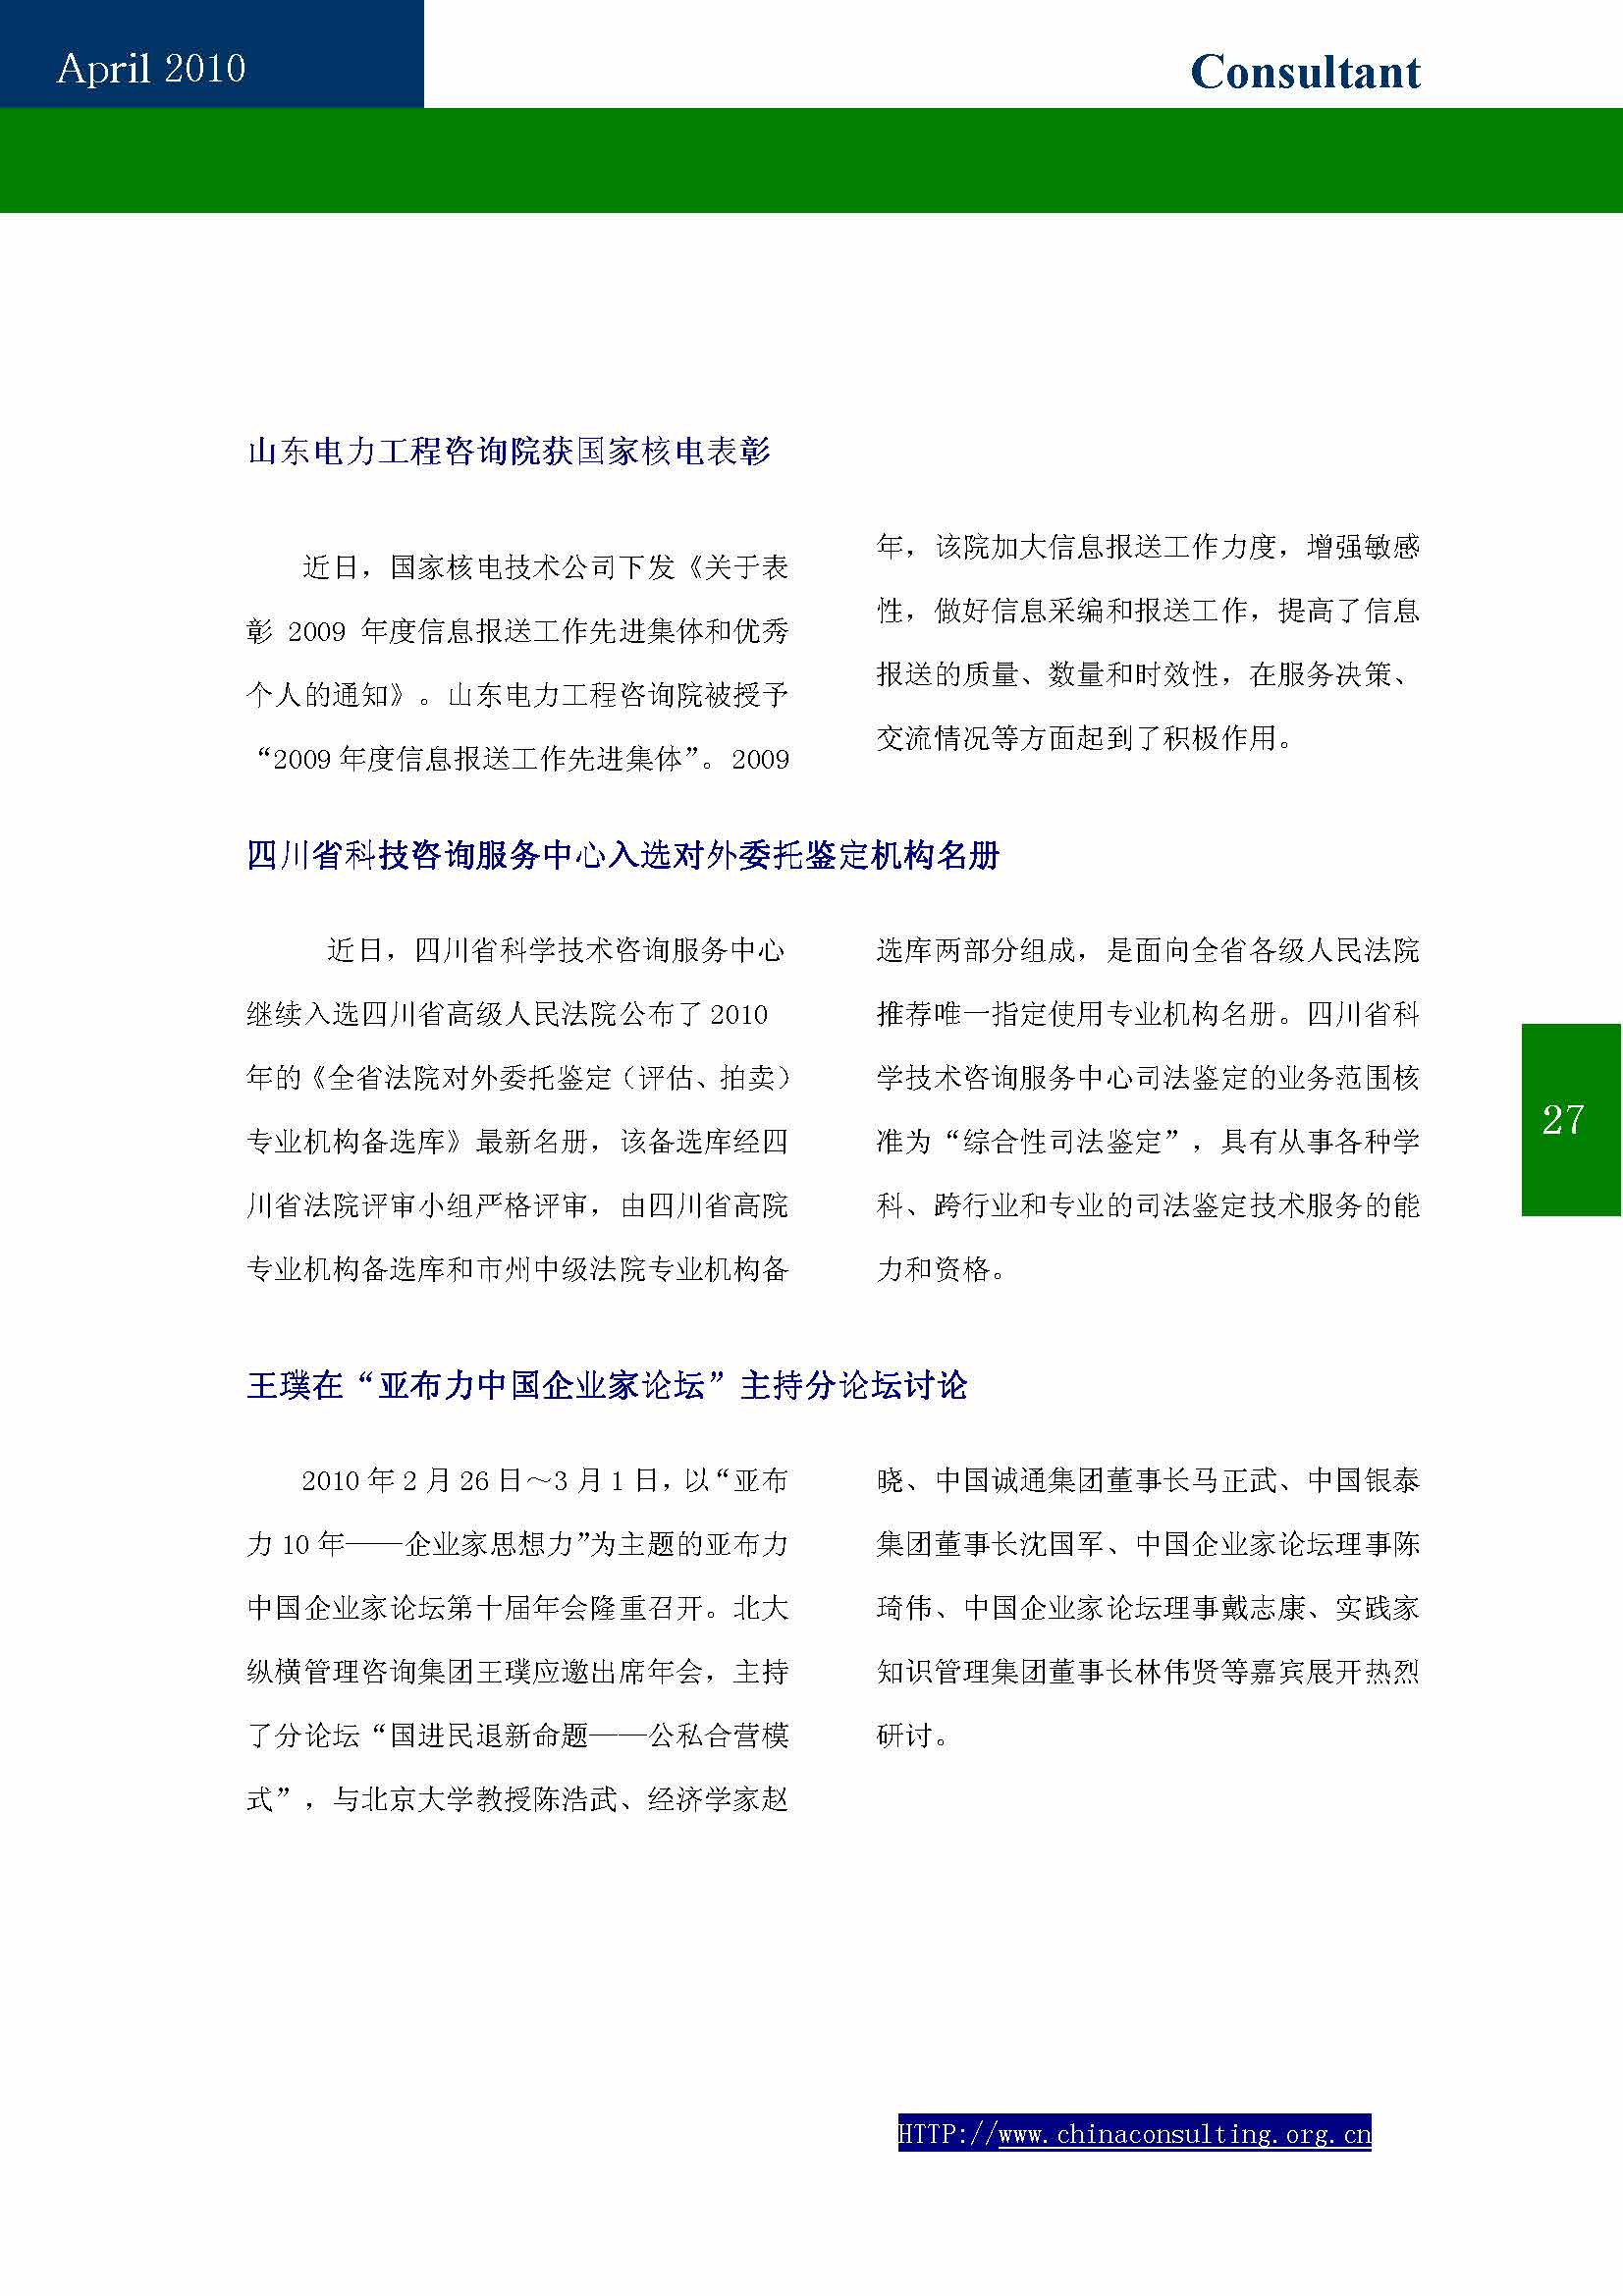 9中国科技咨询协会第九期会刊_页面_29.jpg